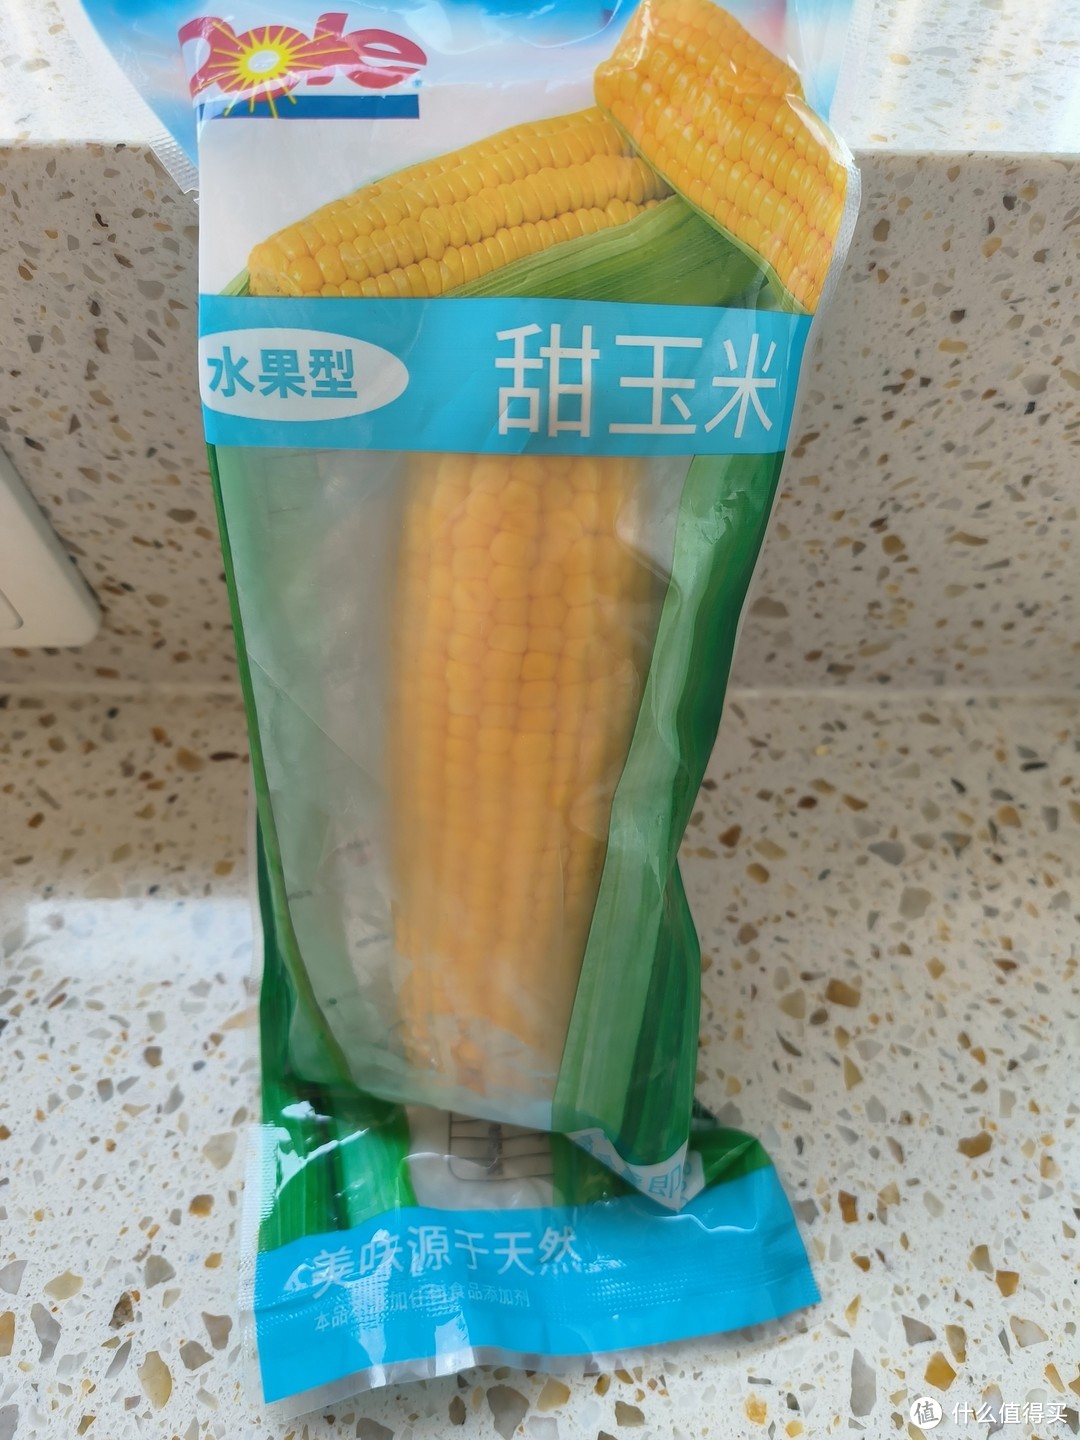 有牌子的玉米就更好吃吗？